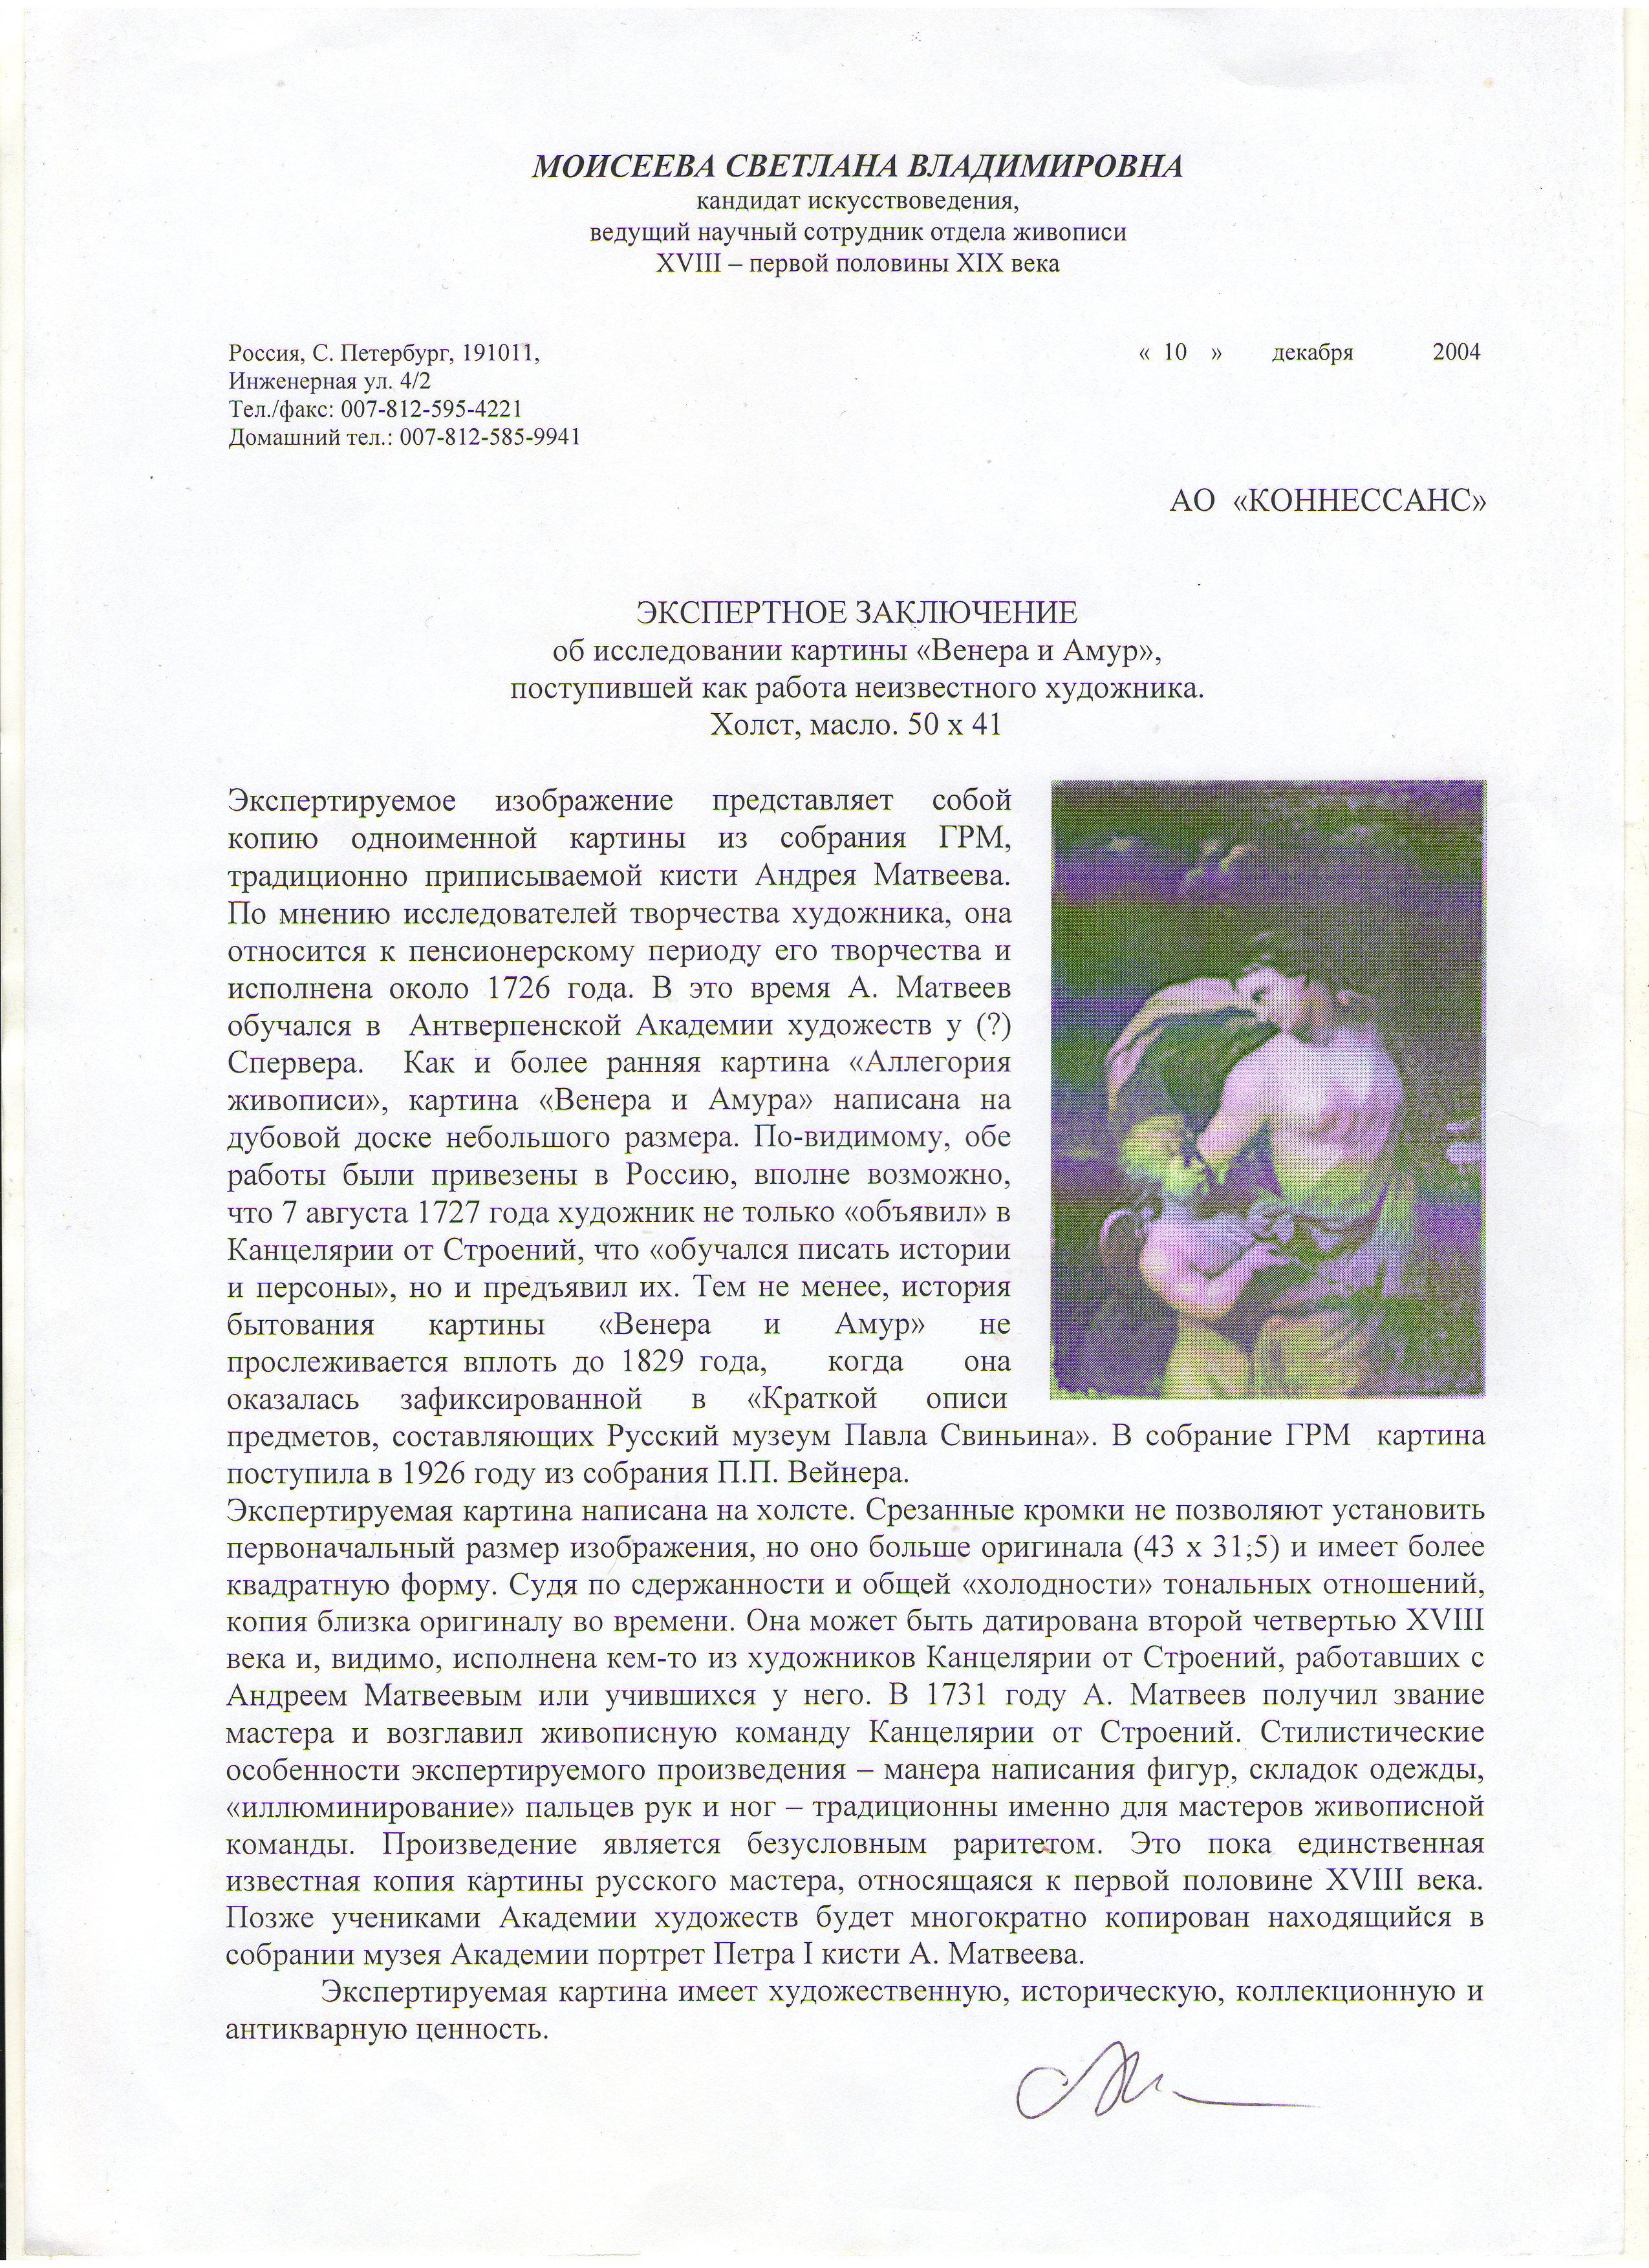 Ил. 7. Экспертное  Заключение С.В. Моисеевой от 10.12.2004